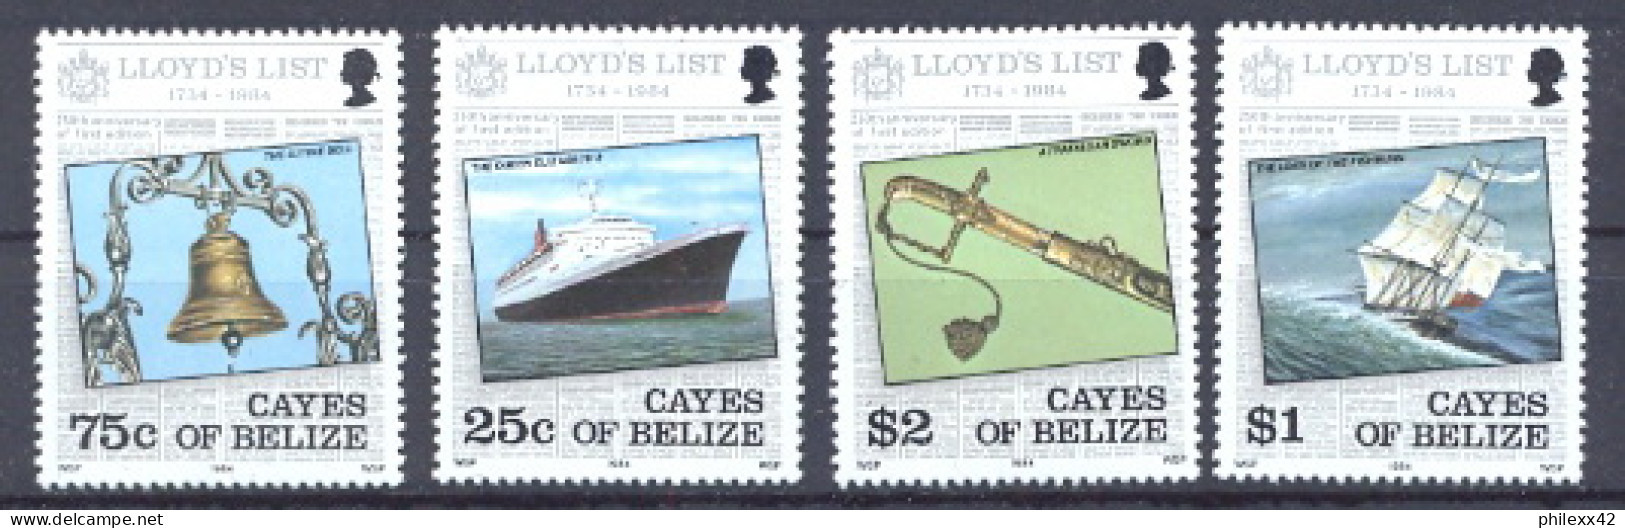 Cayes Du Belize 375 - N° 10/13 Bateau (bateaux Ship Ships) LLOYD Série Cote 6 Euros MNH ** - Belize (1973-...)